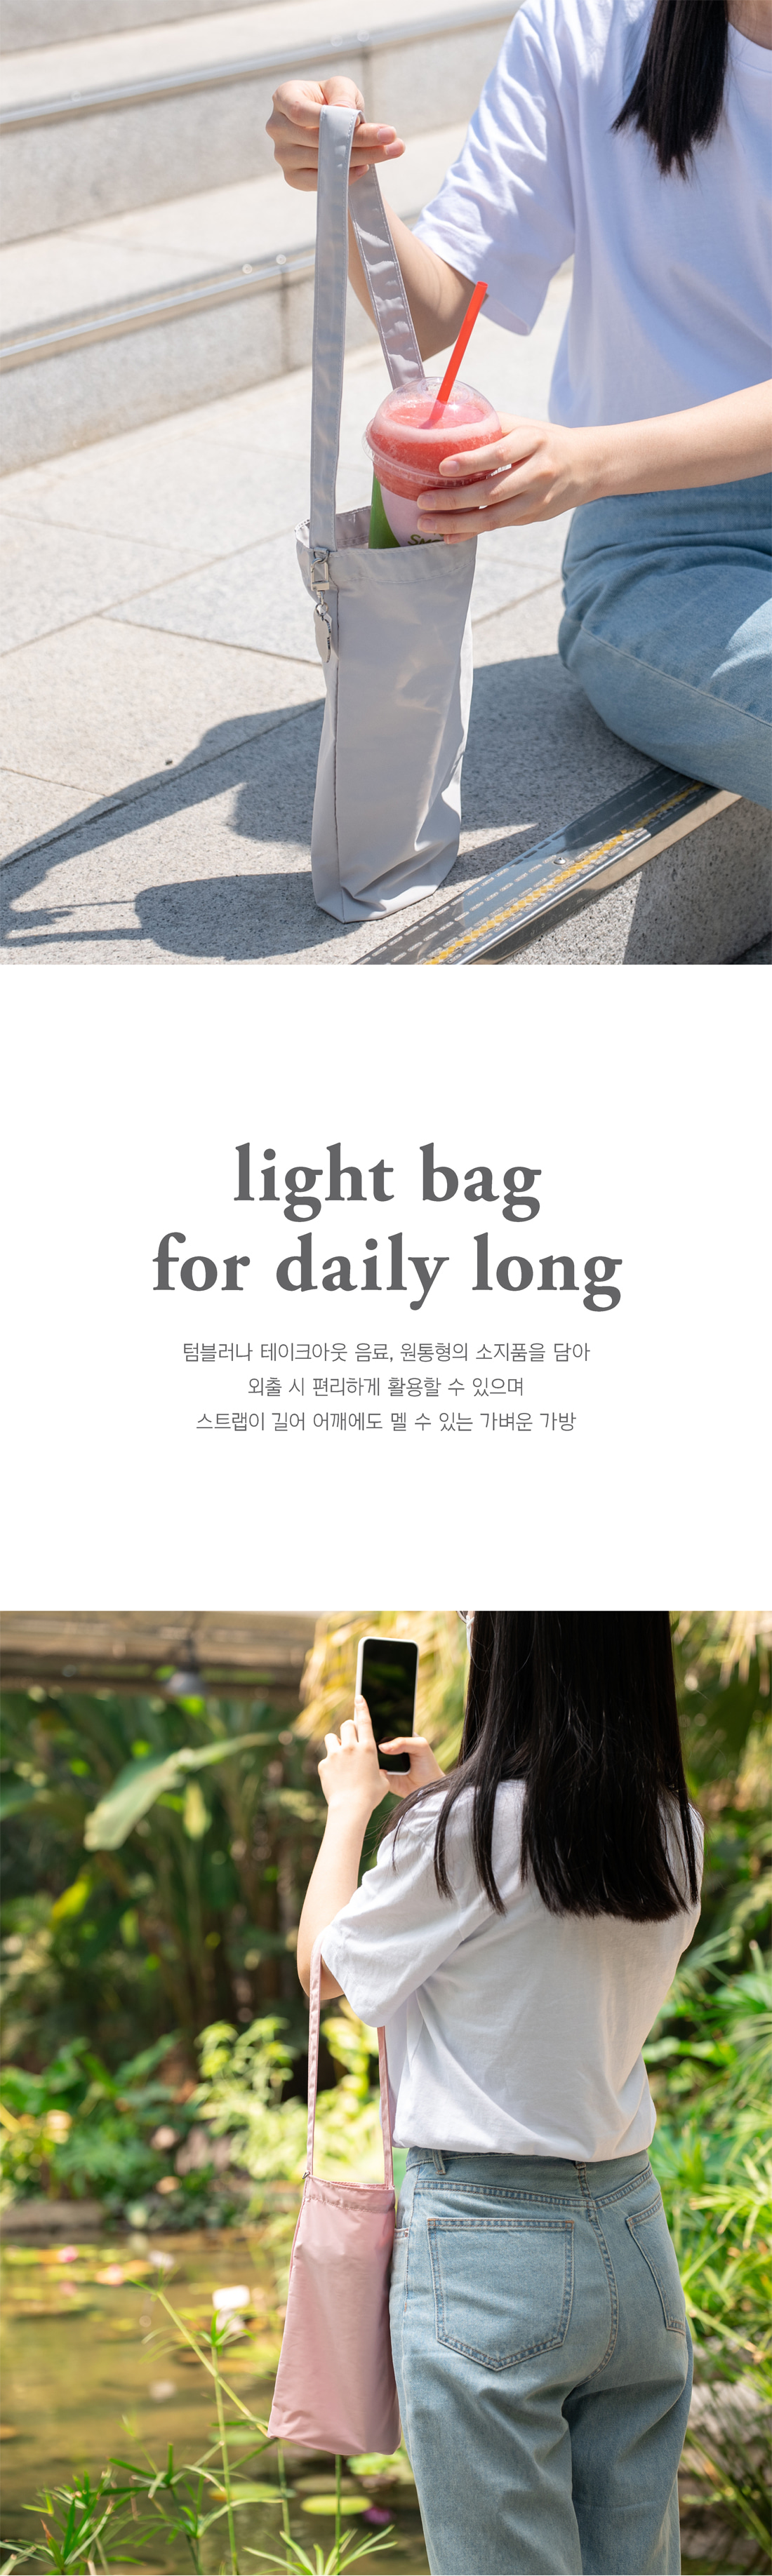 TR_lightbag_for_daily_long_1.jpg